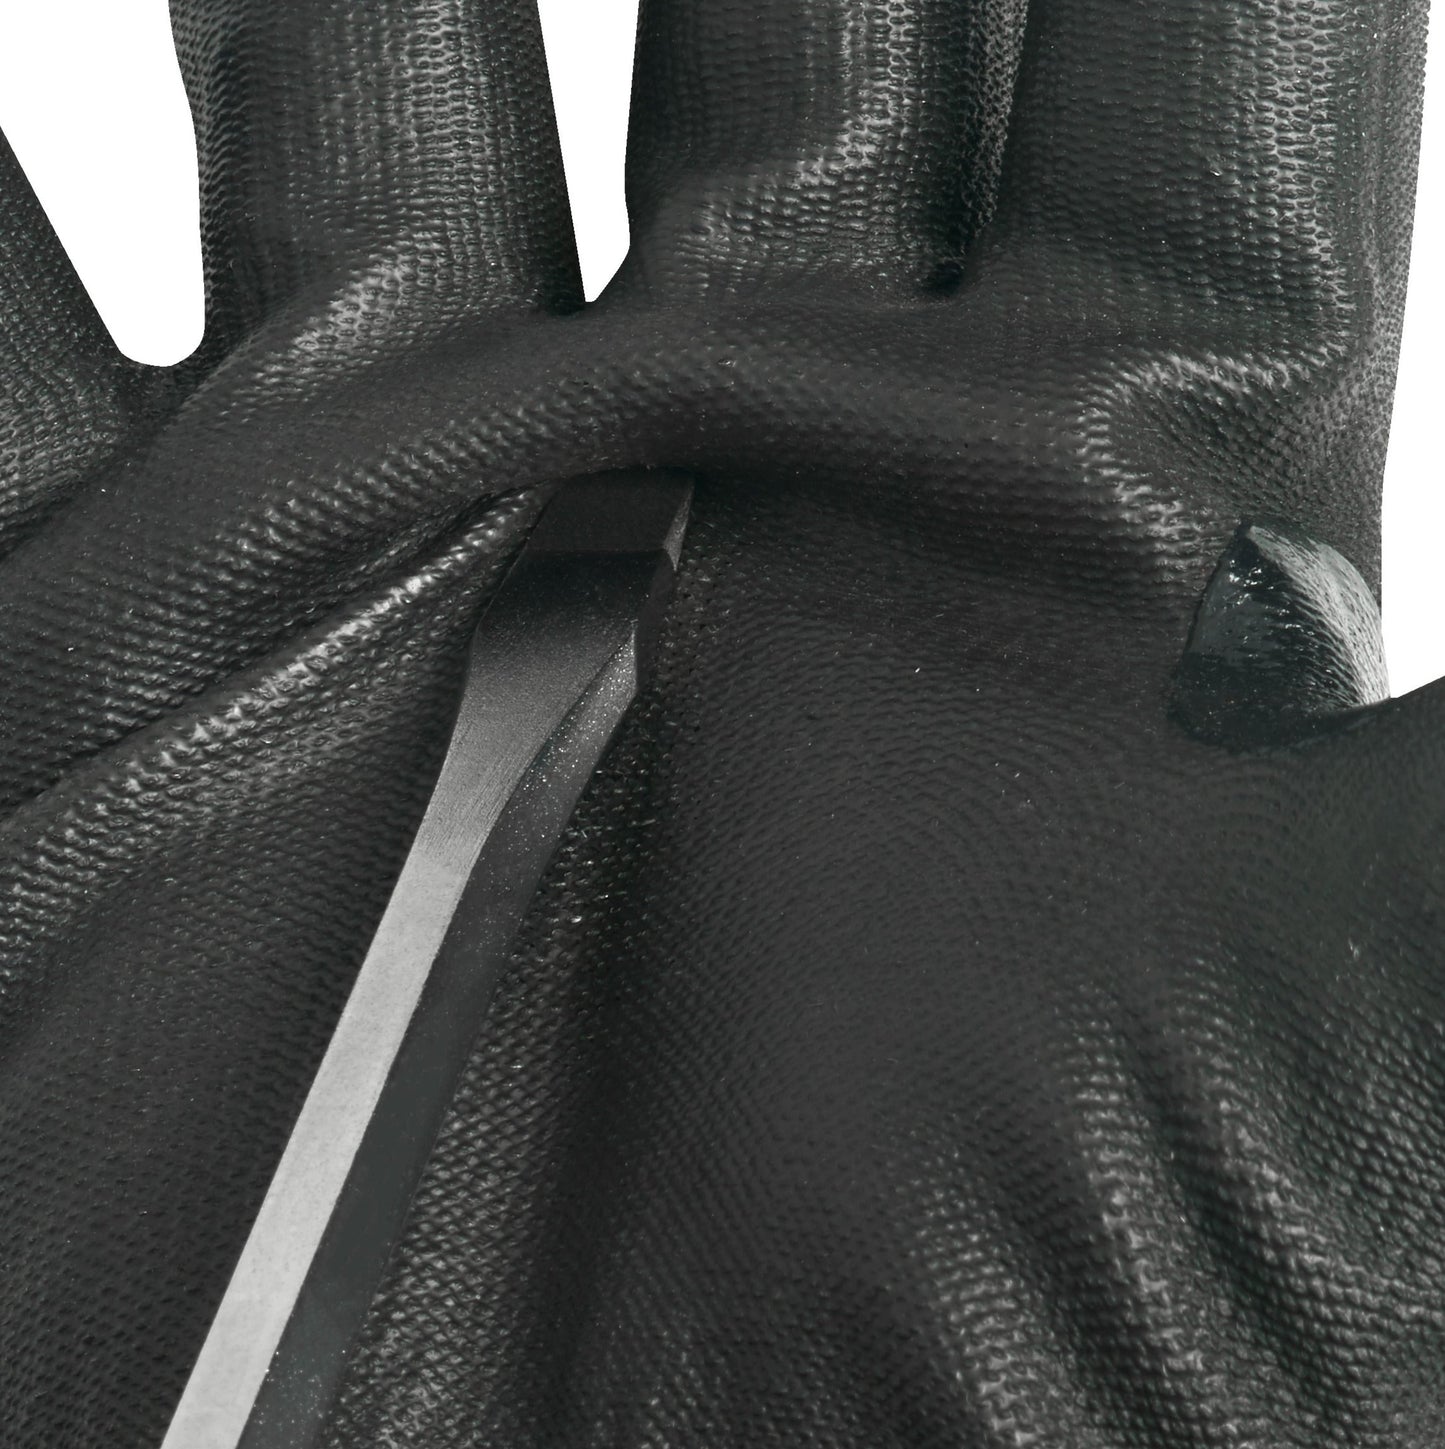 Rękawice odporne na przecięcia - zimowe - poz. E - 1 para - Centrum Techniczne Gałązka